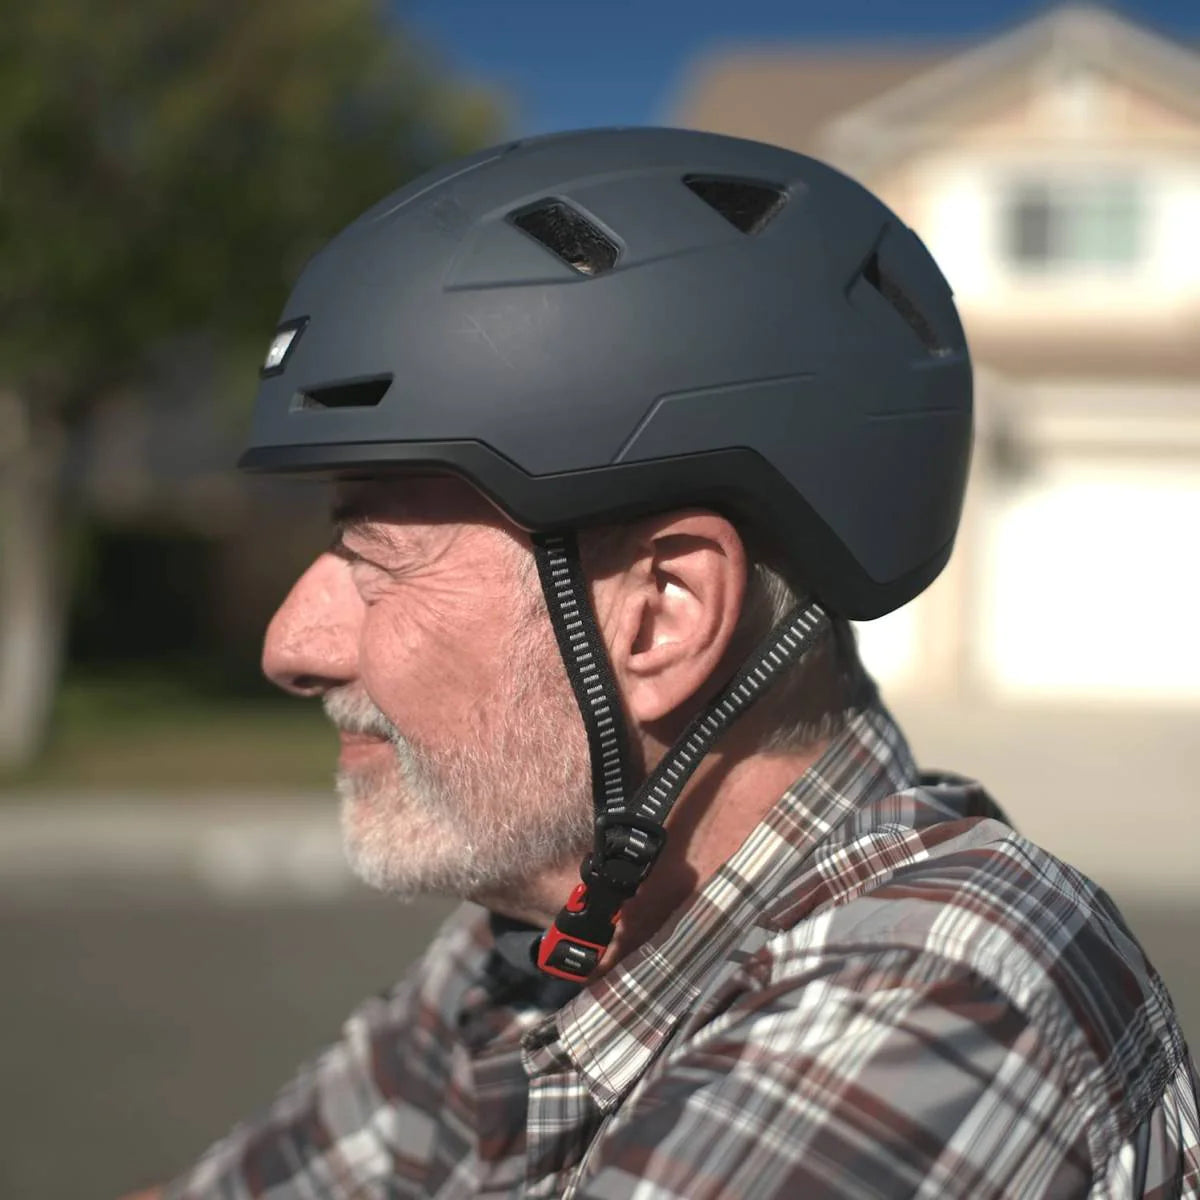 Urbanite | XNITO Helmet | E-Bike Helmet